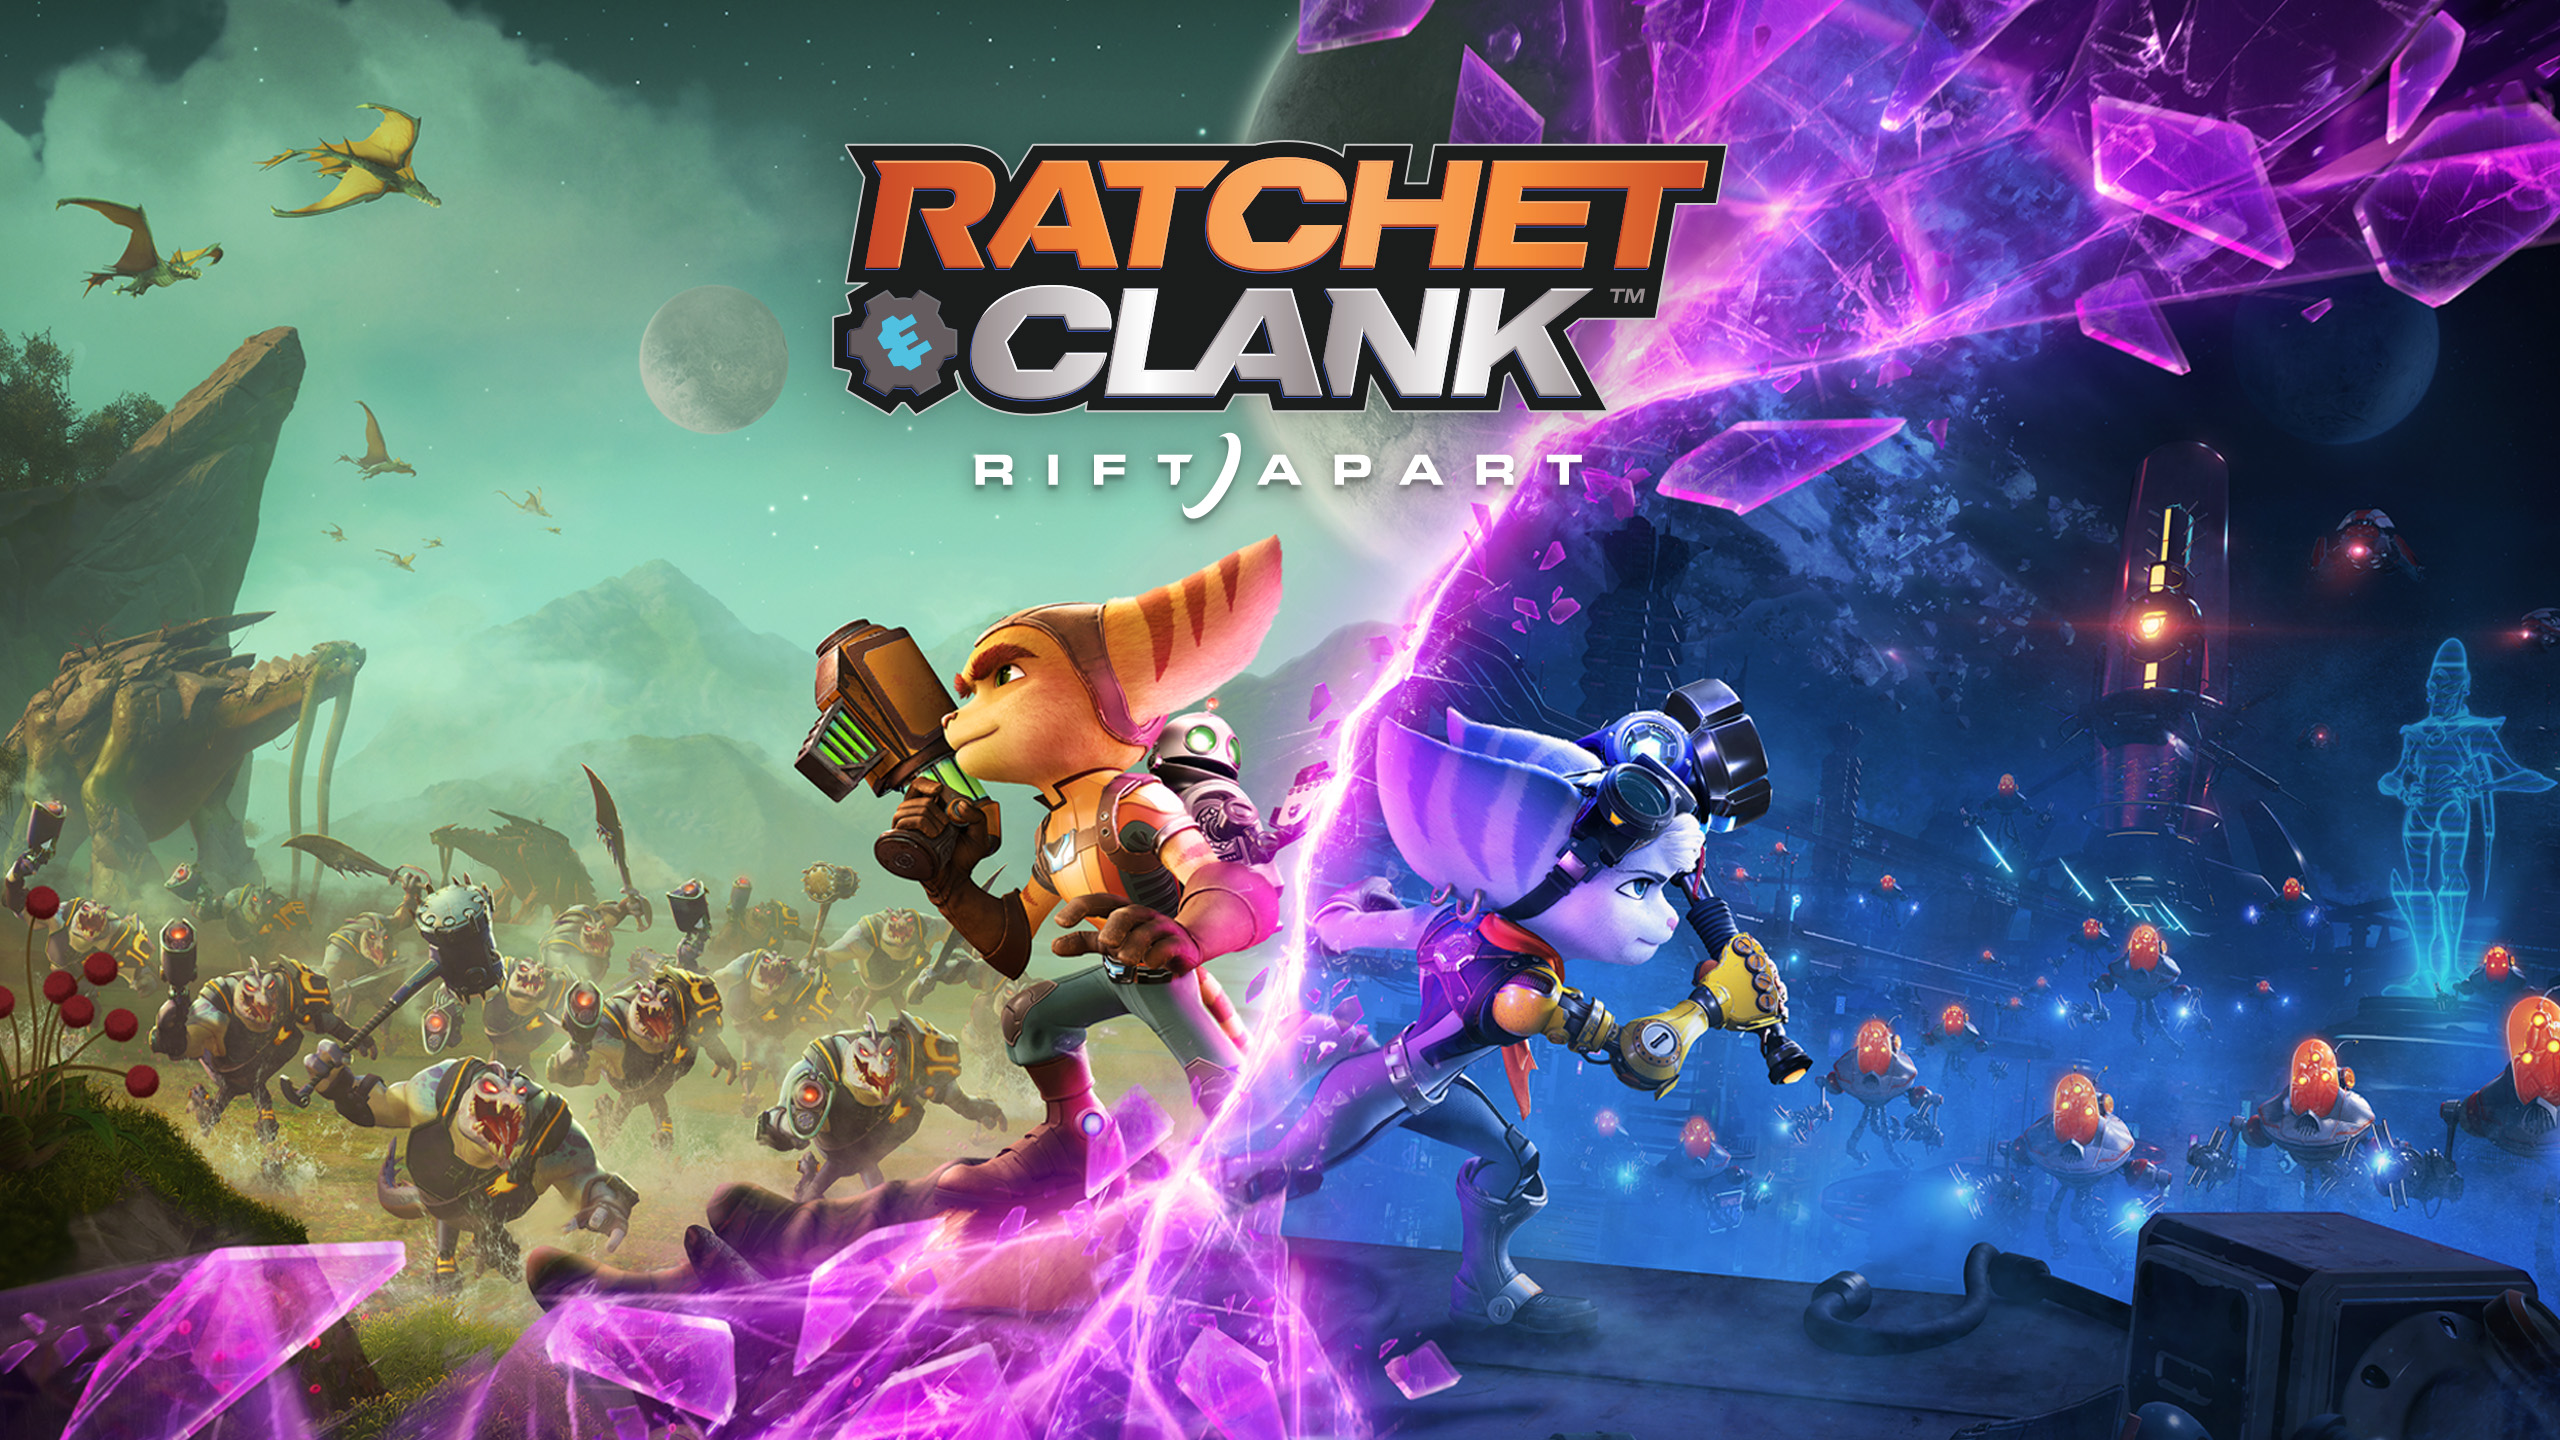 Ratchet & Clank: Rift Apart ИГРОМУЛЬФИЛЬМ ►#8 Прохождение без комментариев (Русская озвучка)